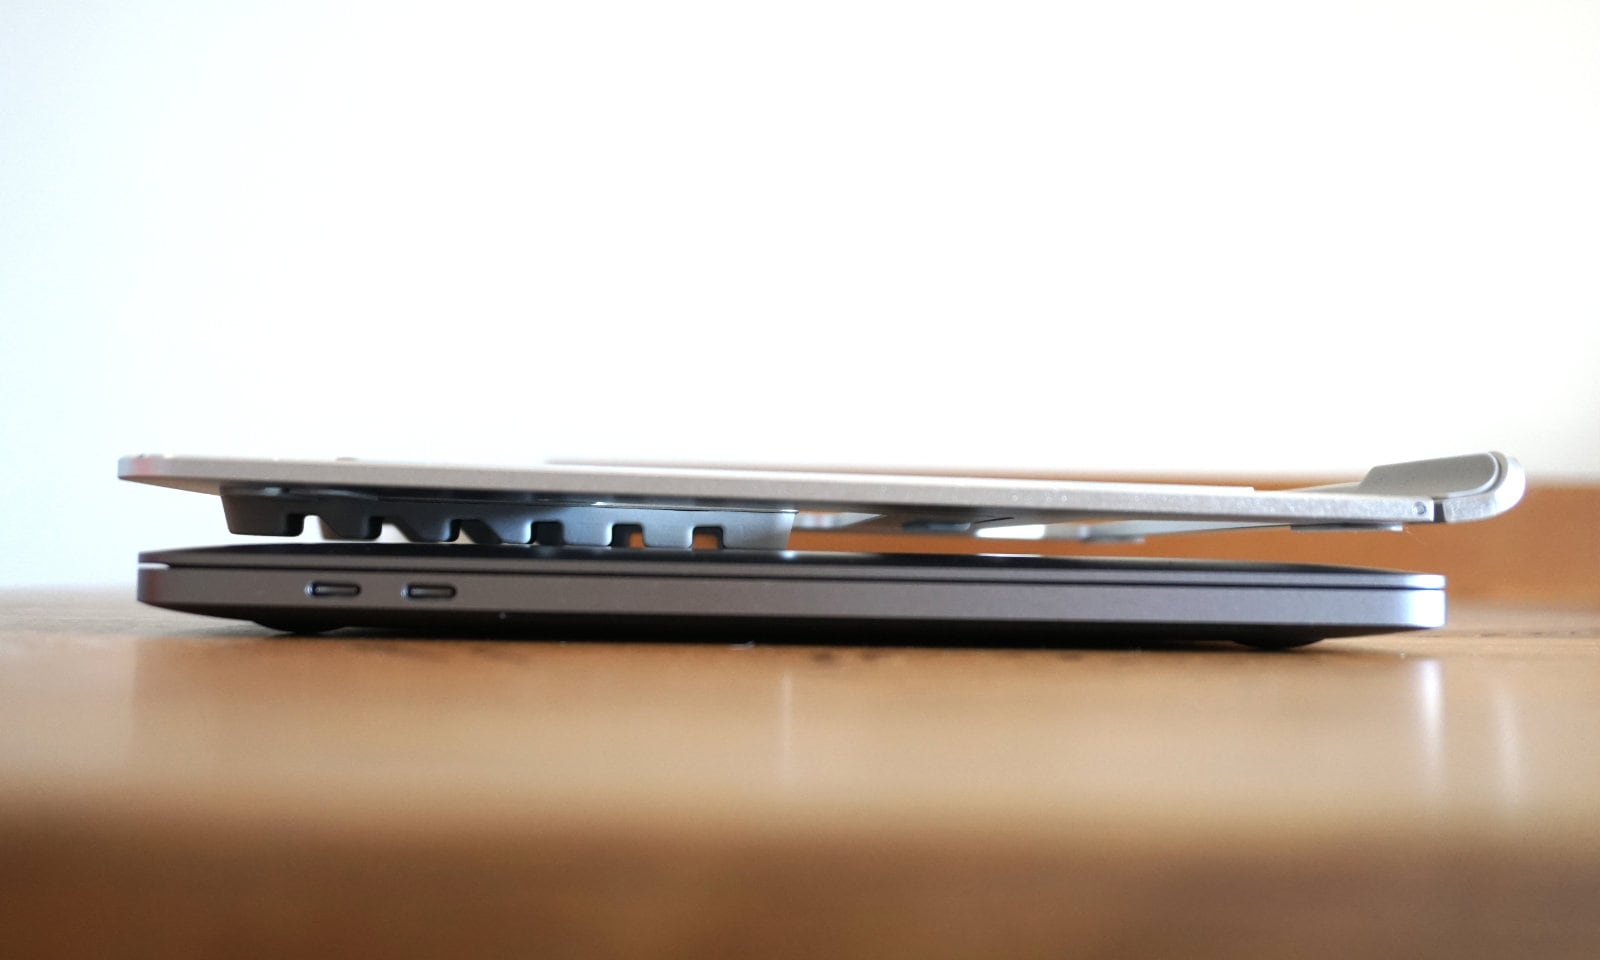 MacBook Proの上に折りたたんだノートPCスタンドを乗せた写真。厚さの比較